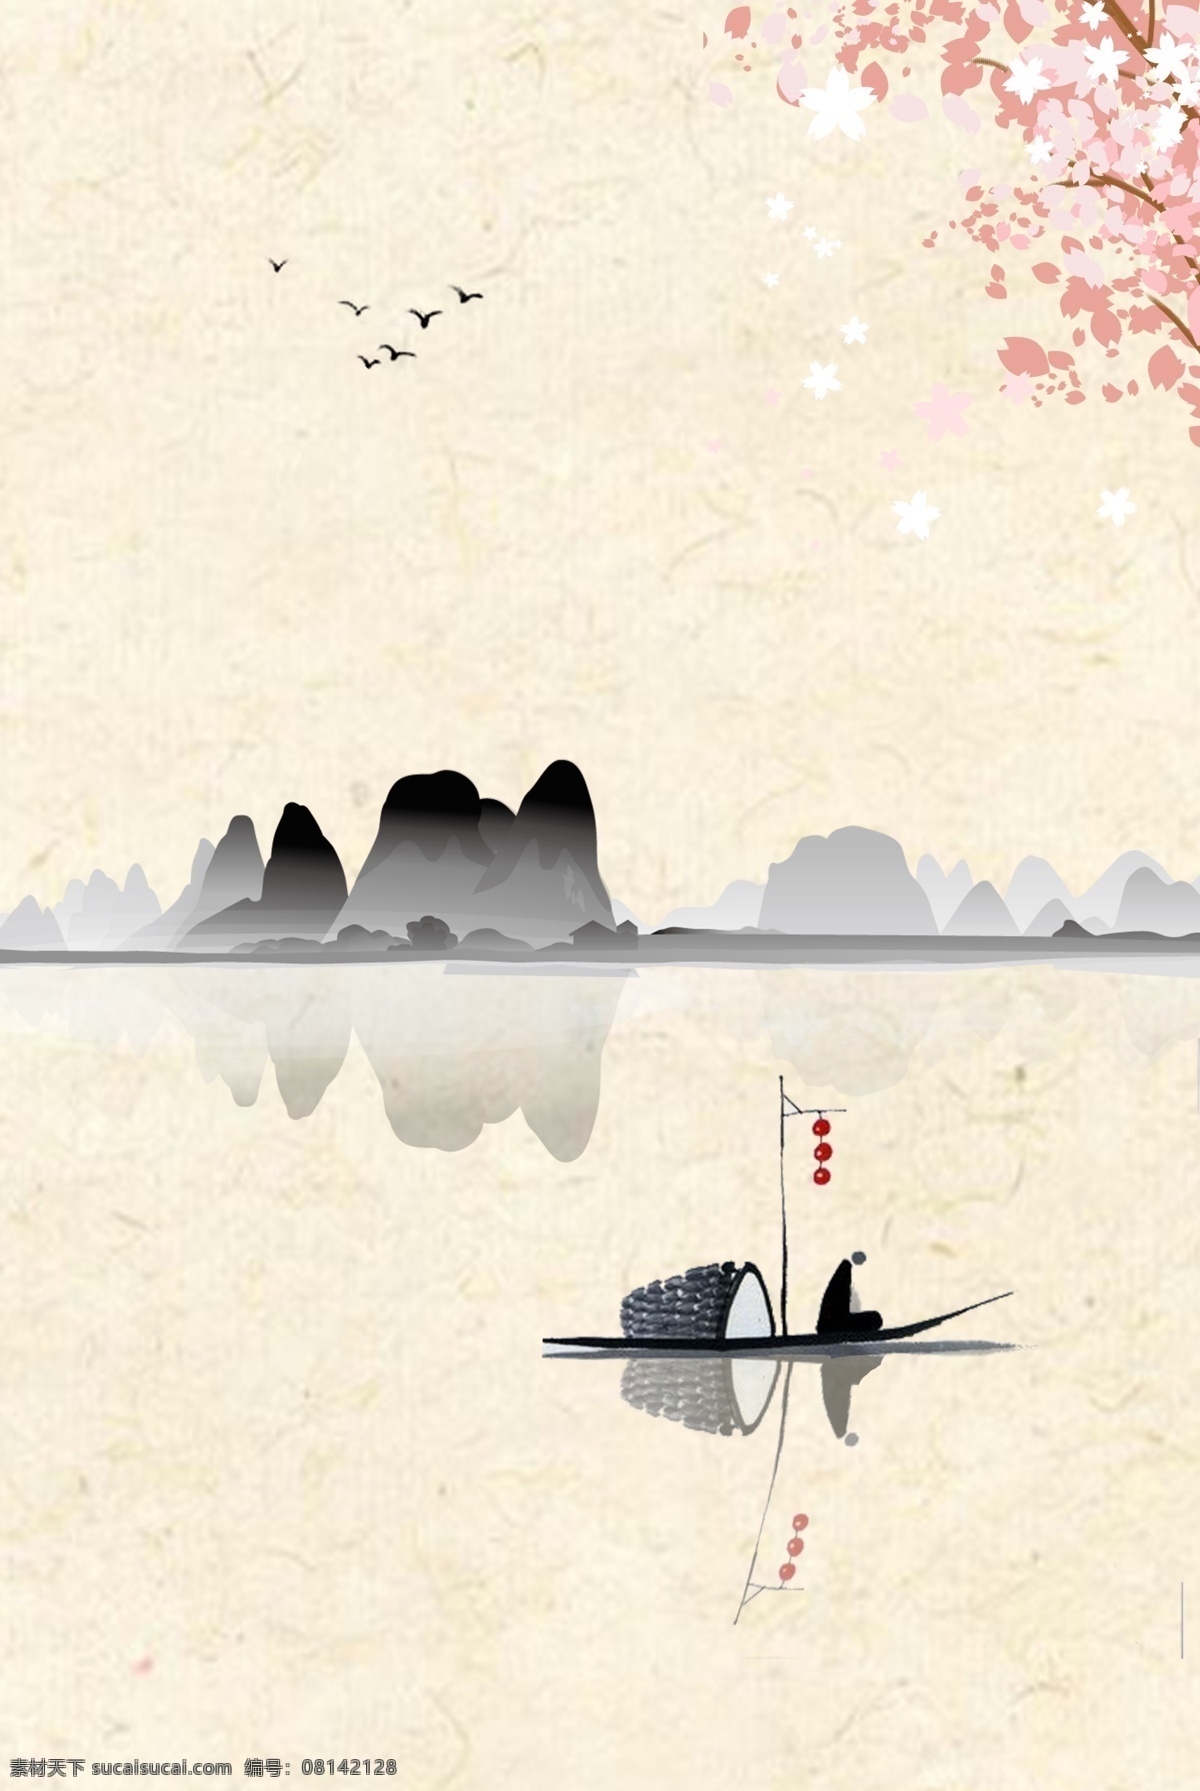 中国风 水墨画 山水图 孤舟 海报 中式 淡雅 手绘 背景 宣传页